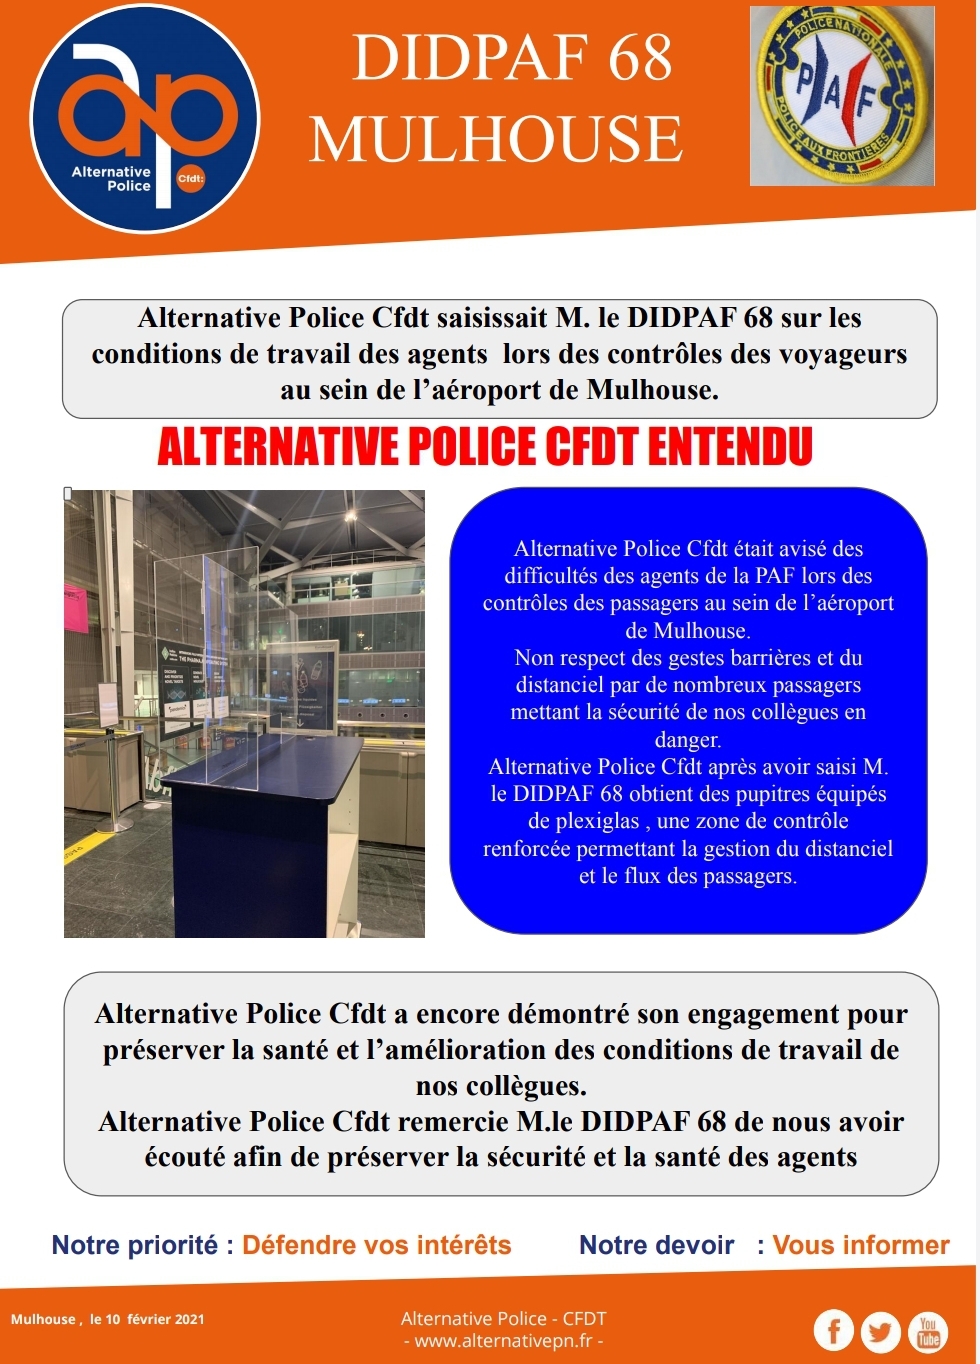 DIDPAF 68 - Alternative Police CFDT intervient pour vos conditions de travail 